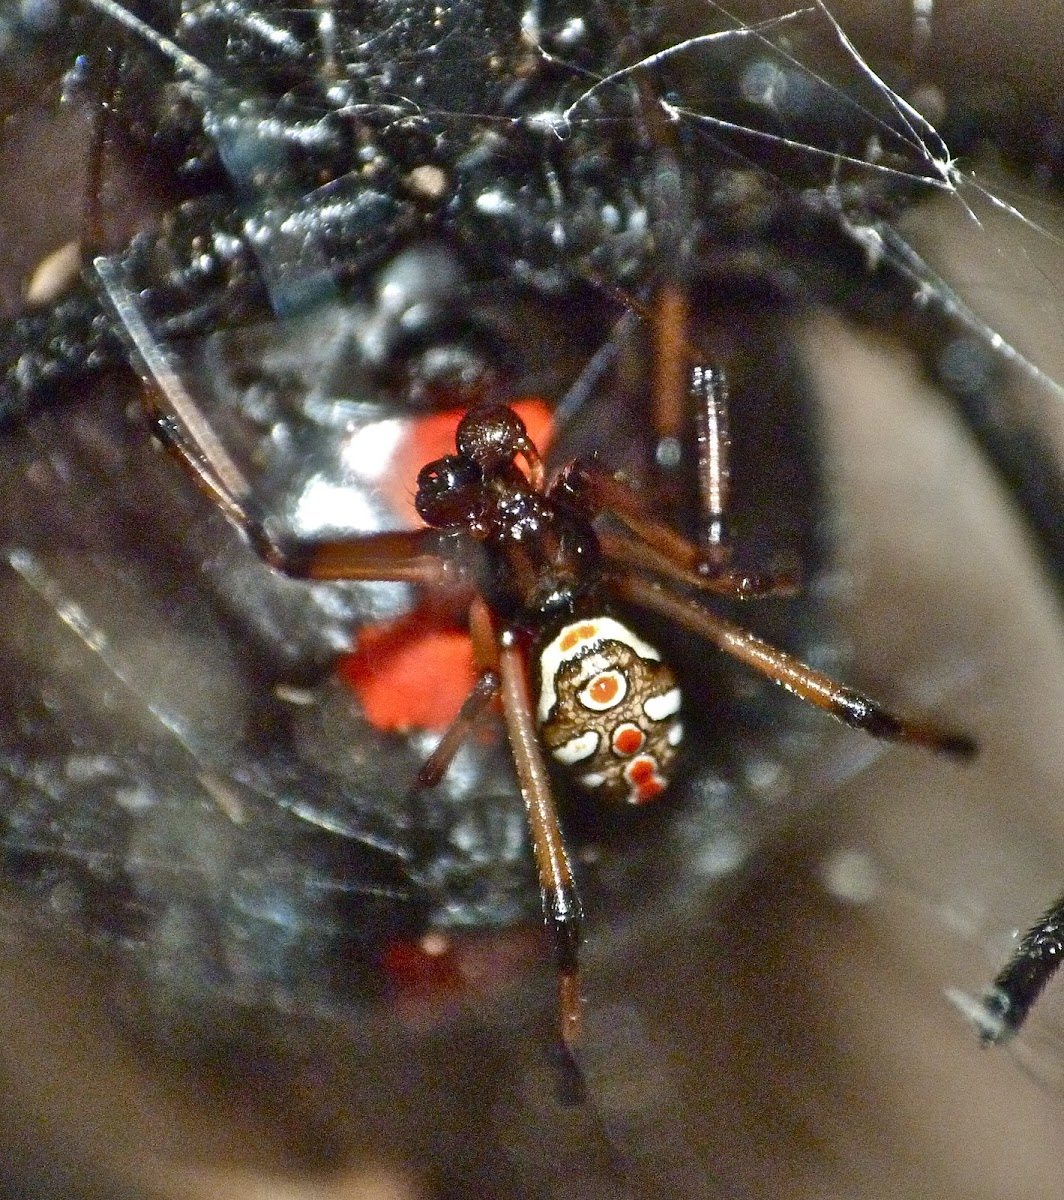 Black widow spider (juvenile male)